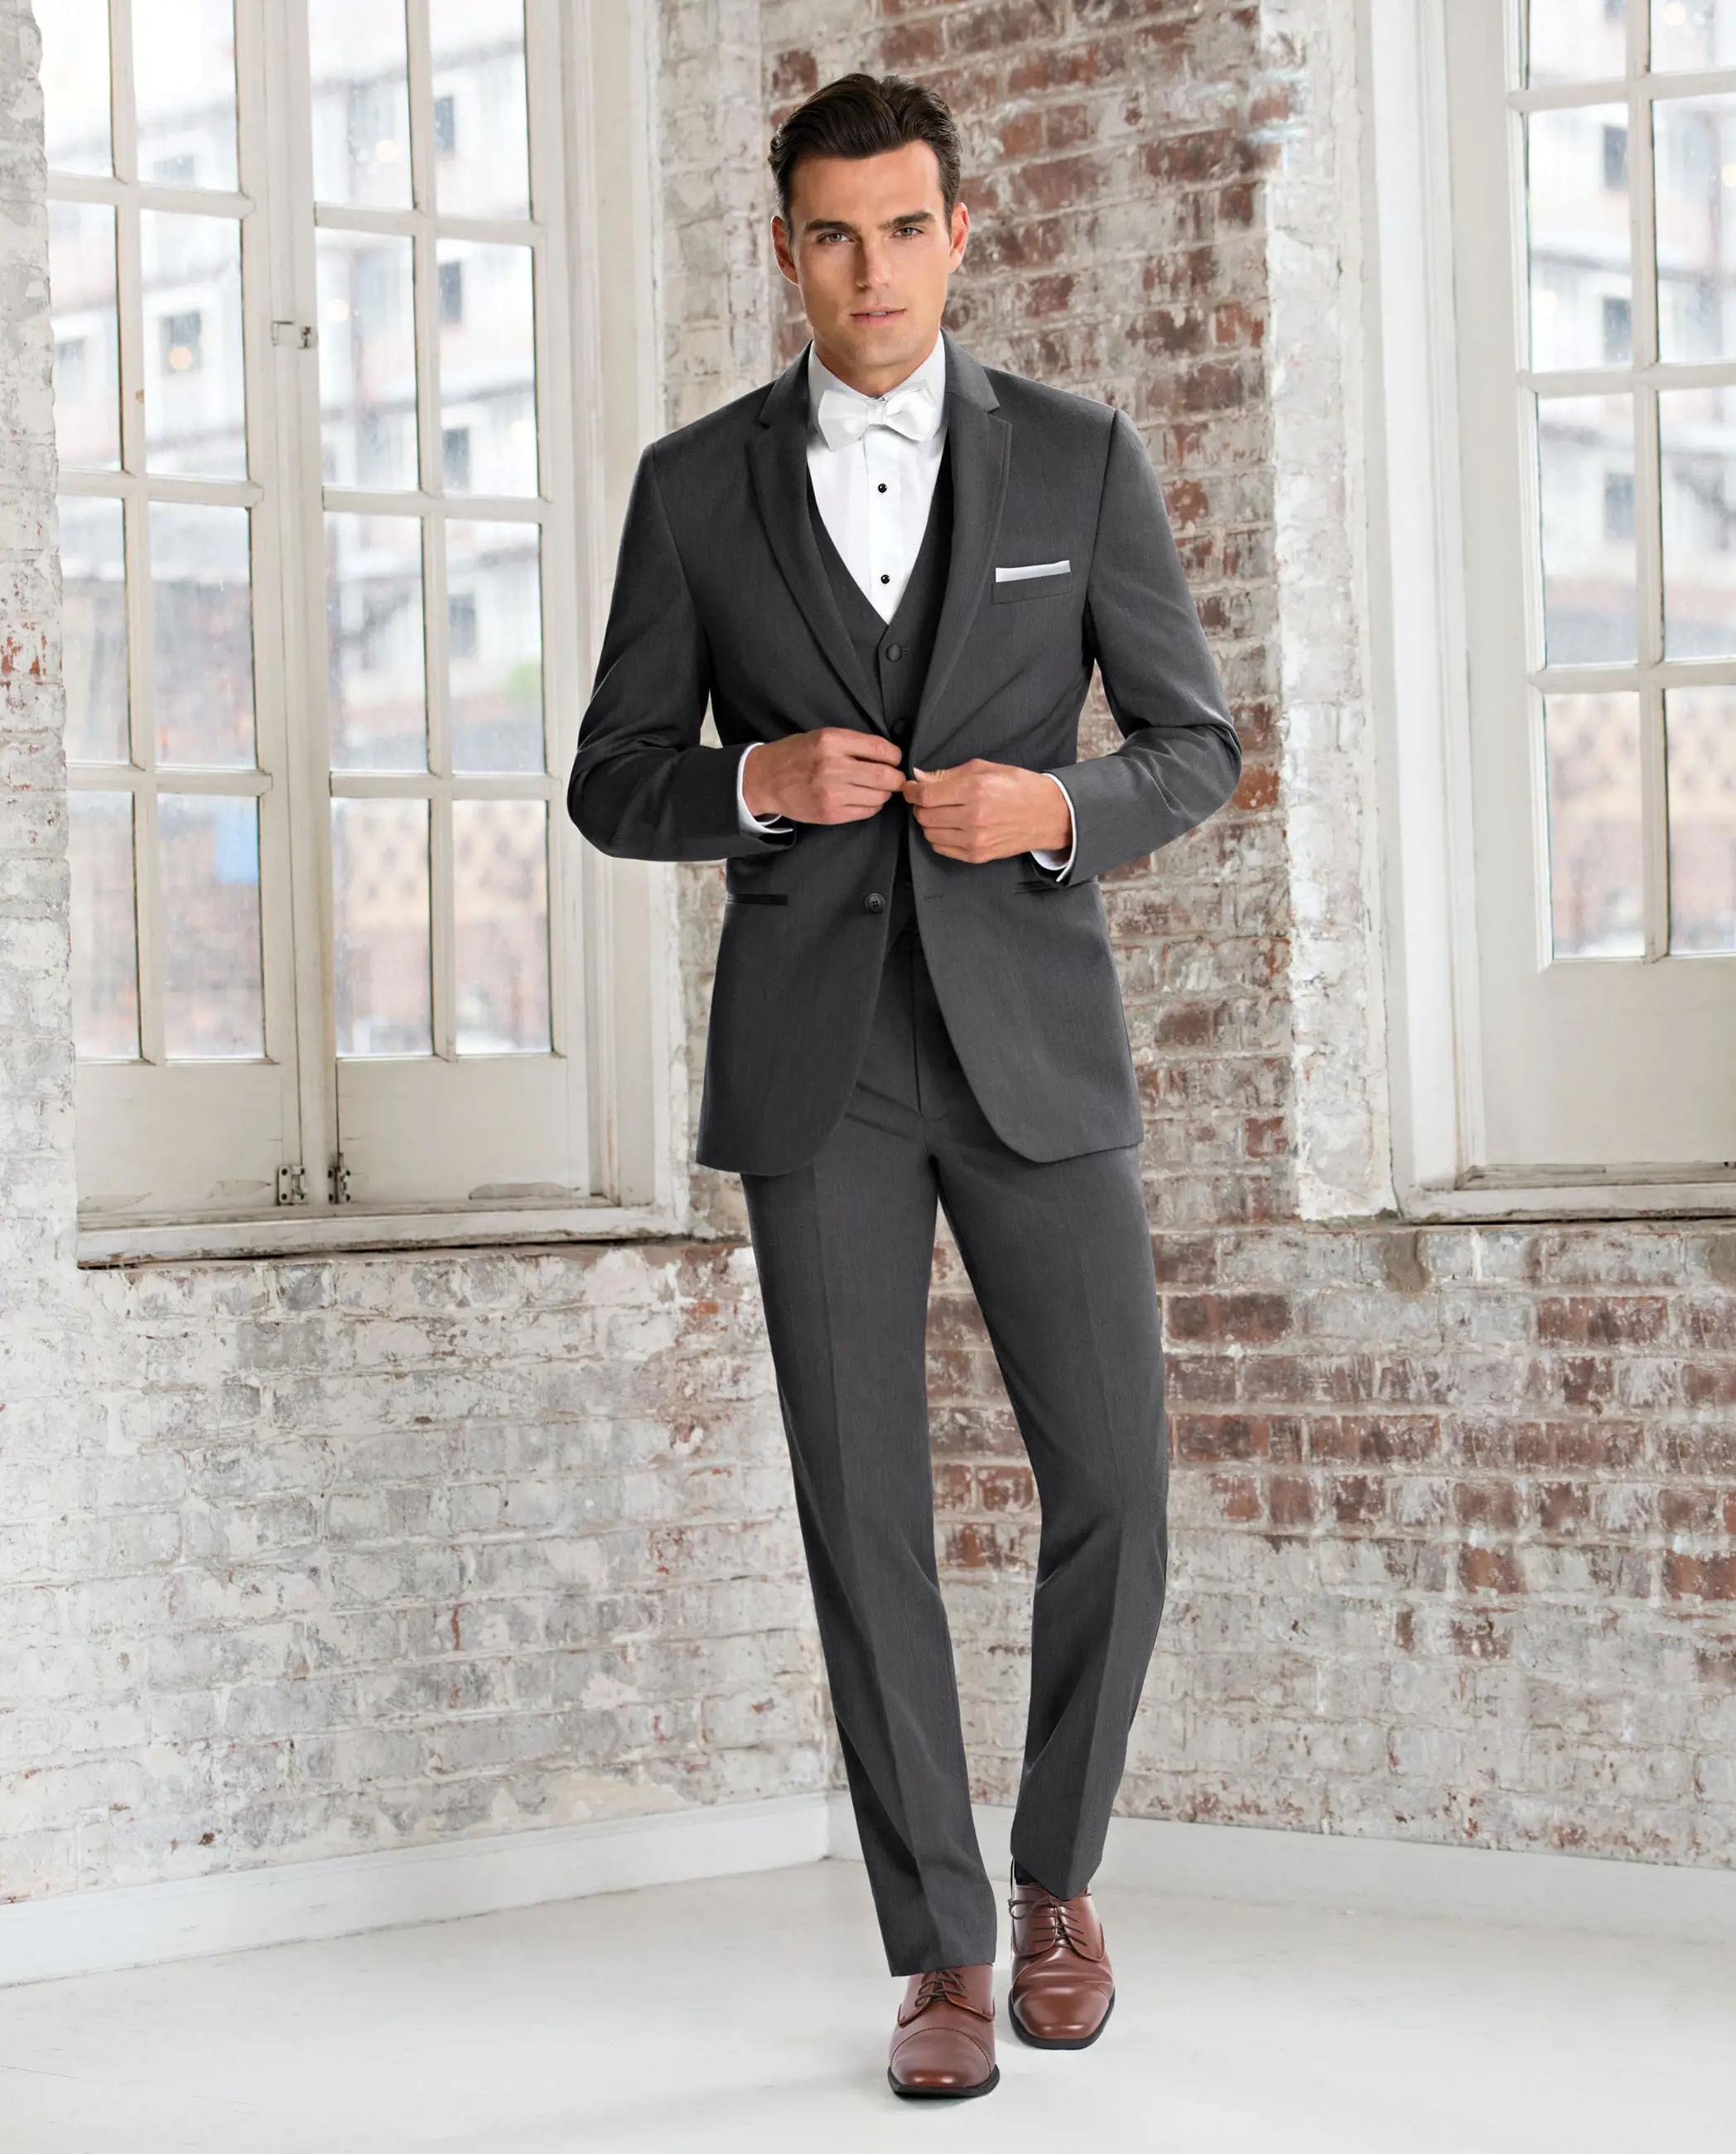 Model wearing a dark-gray suit